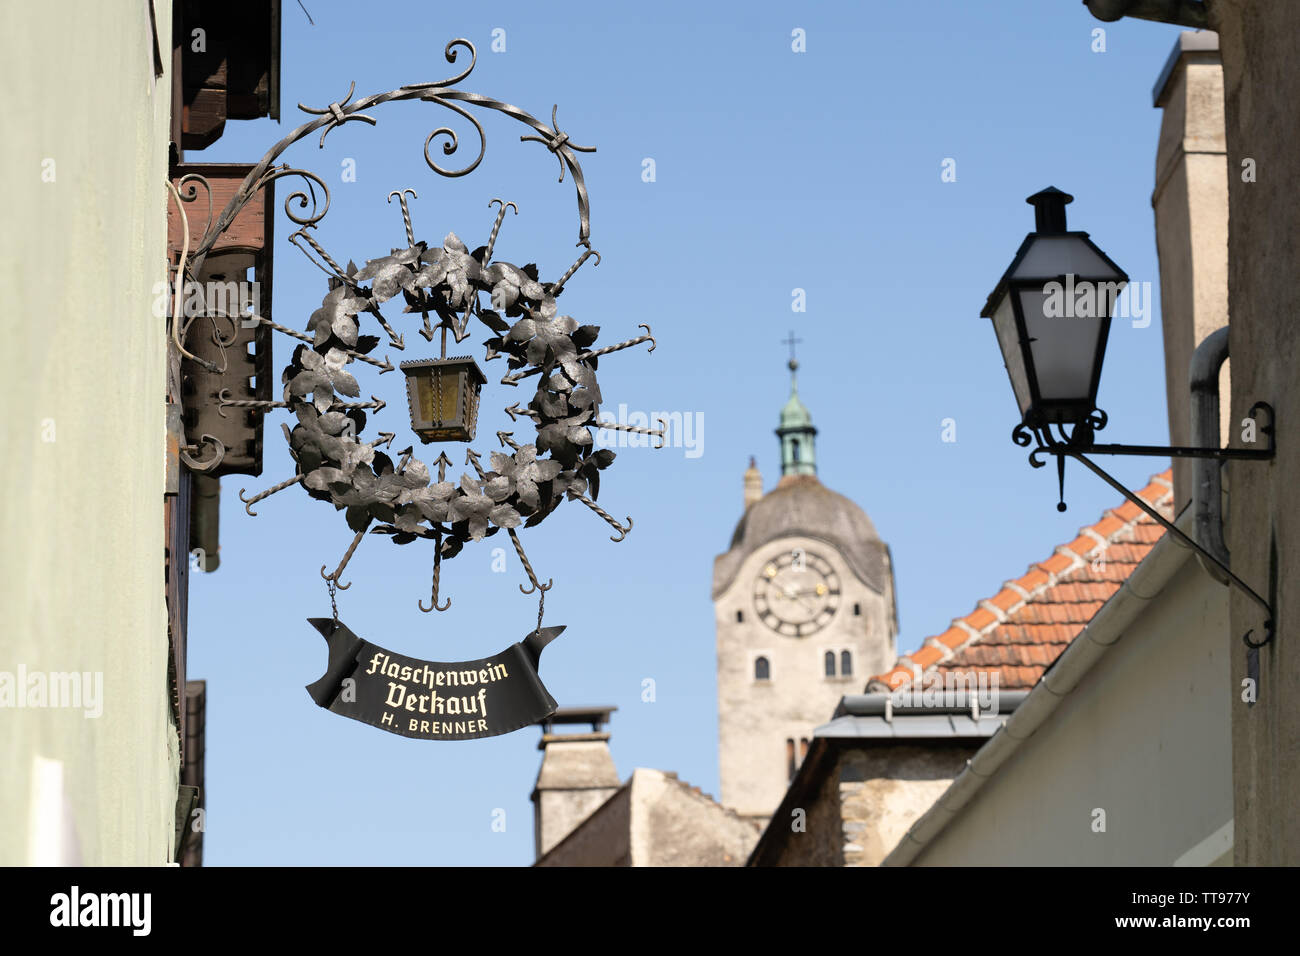 Une plaque de rue dans un vigneron publicité Stein an der Donau, une destination touristique populaire, avec le Frauebergkirche gothique dans l'arrière-plan Banque D'Images